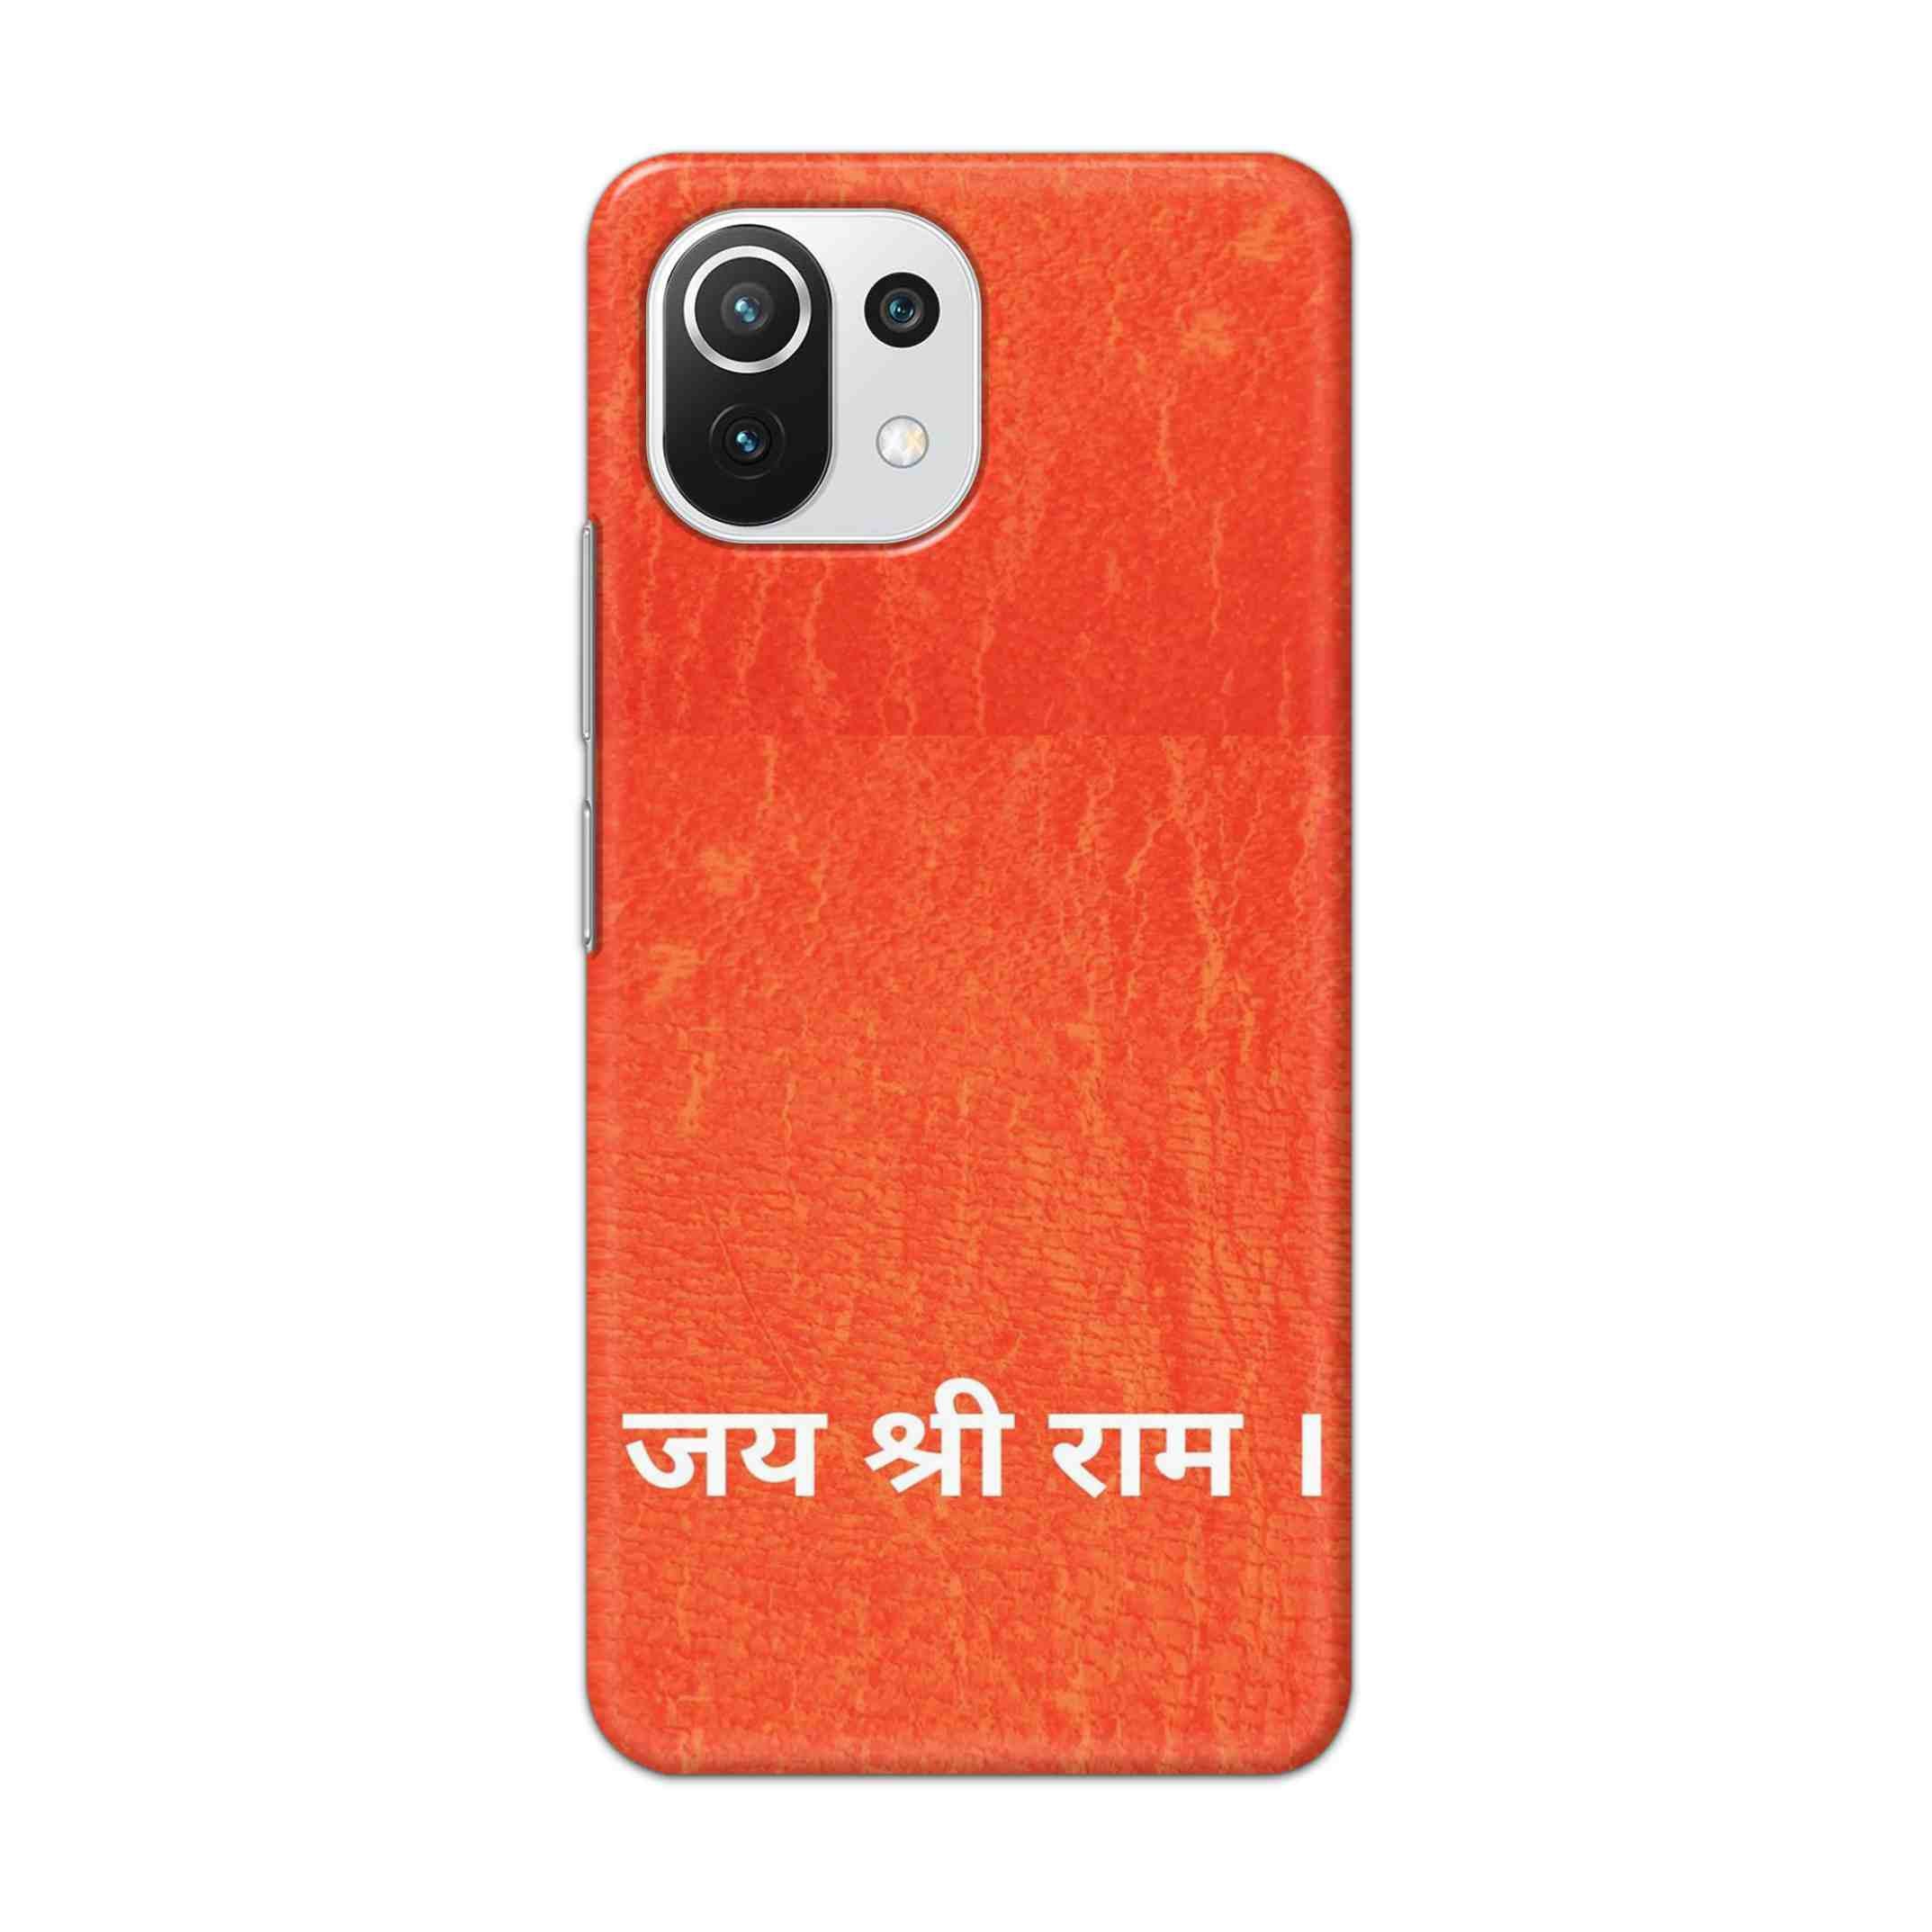 Buy Jai Shree Ram Hard Back Mobile Phone Case Cover For Mi 11 Lite NE 5G Online